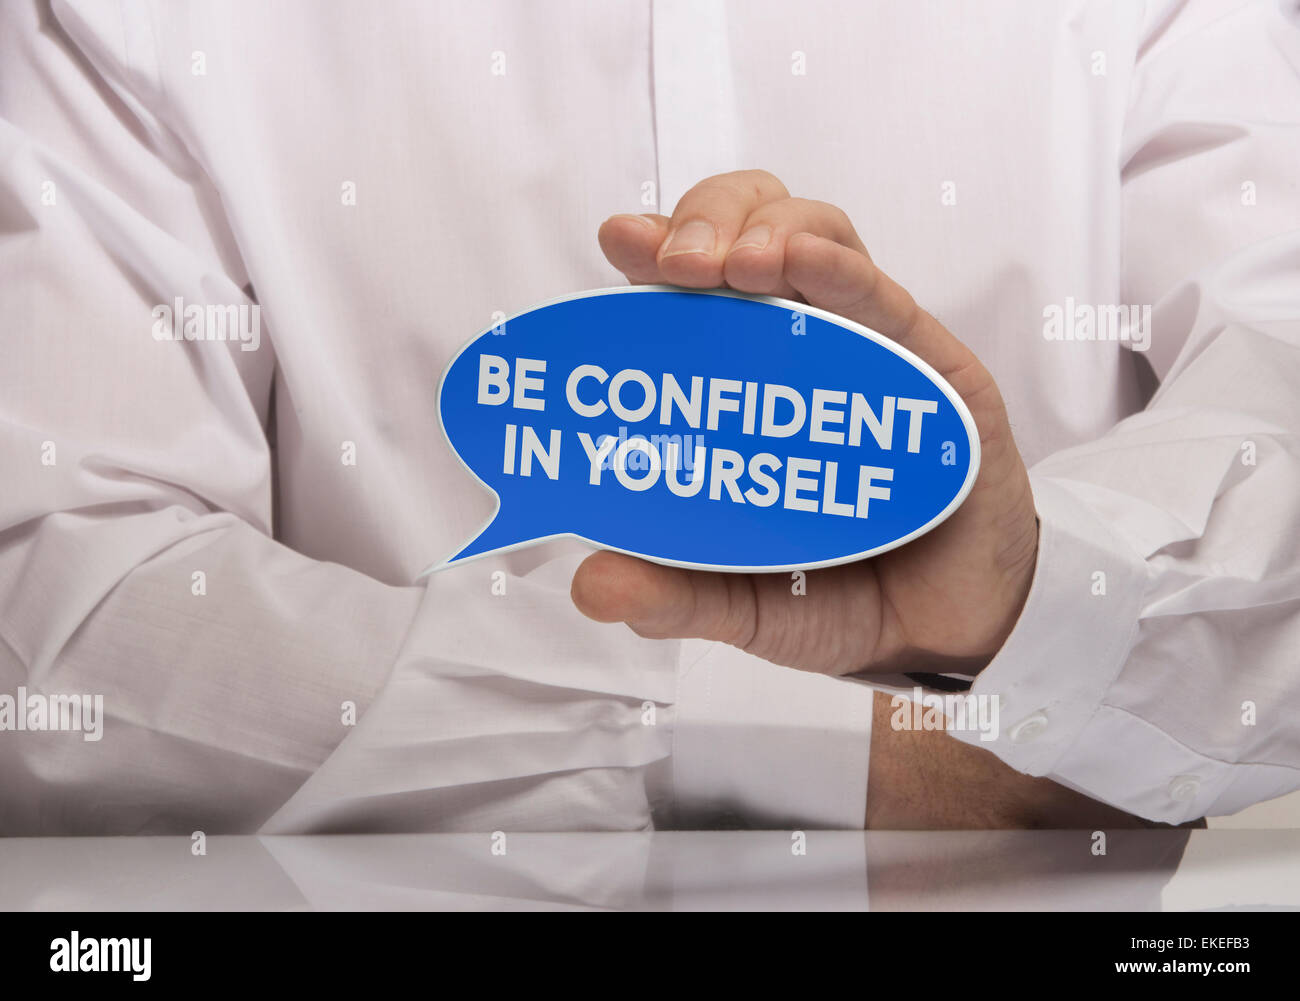 Image d'un homme part holding blue bulle avec le texte être confiant en vous-même, d'une chemise blanche et de réflexion. Concept et m Banque D'Images